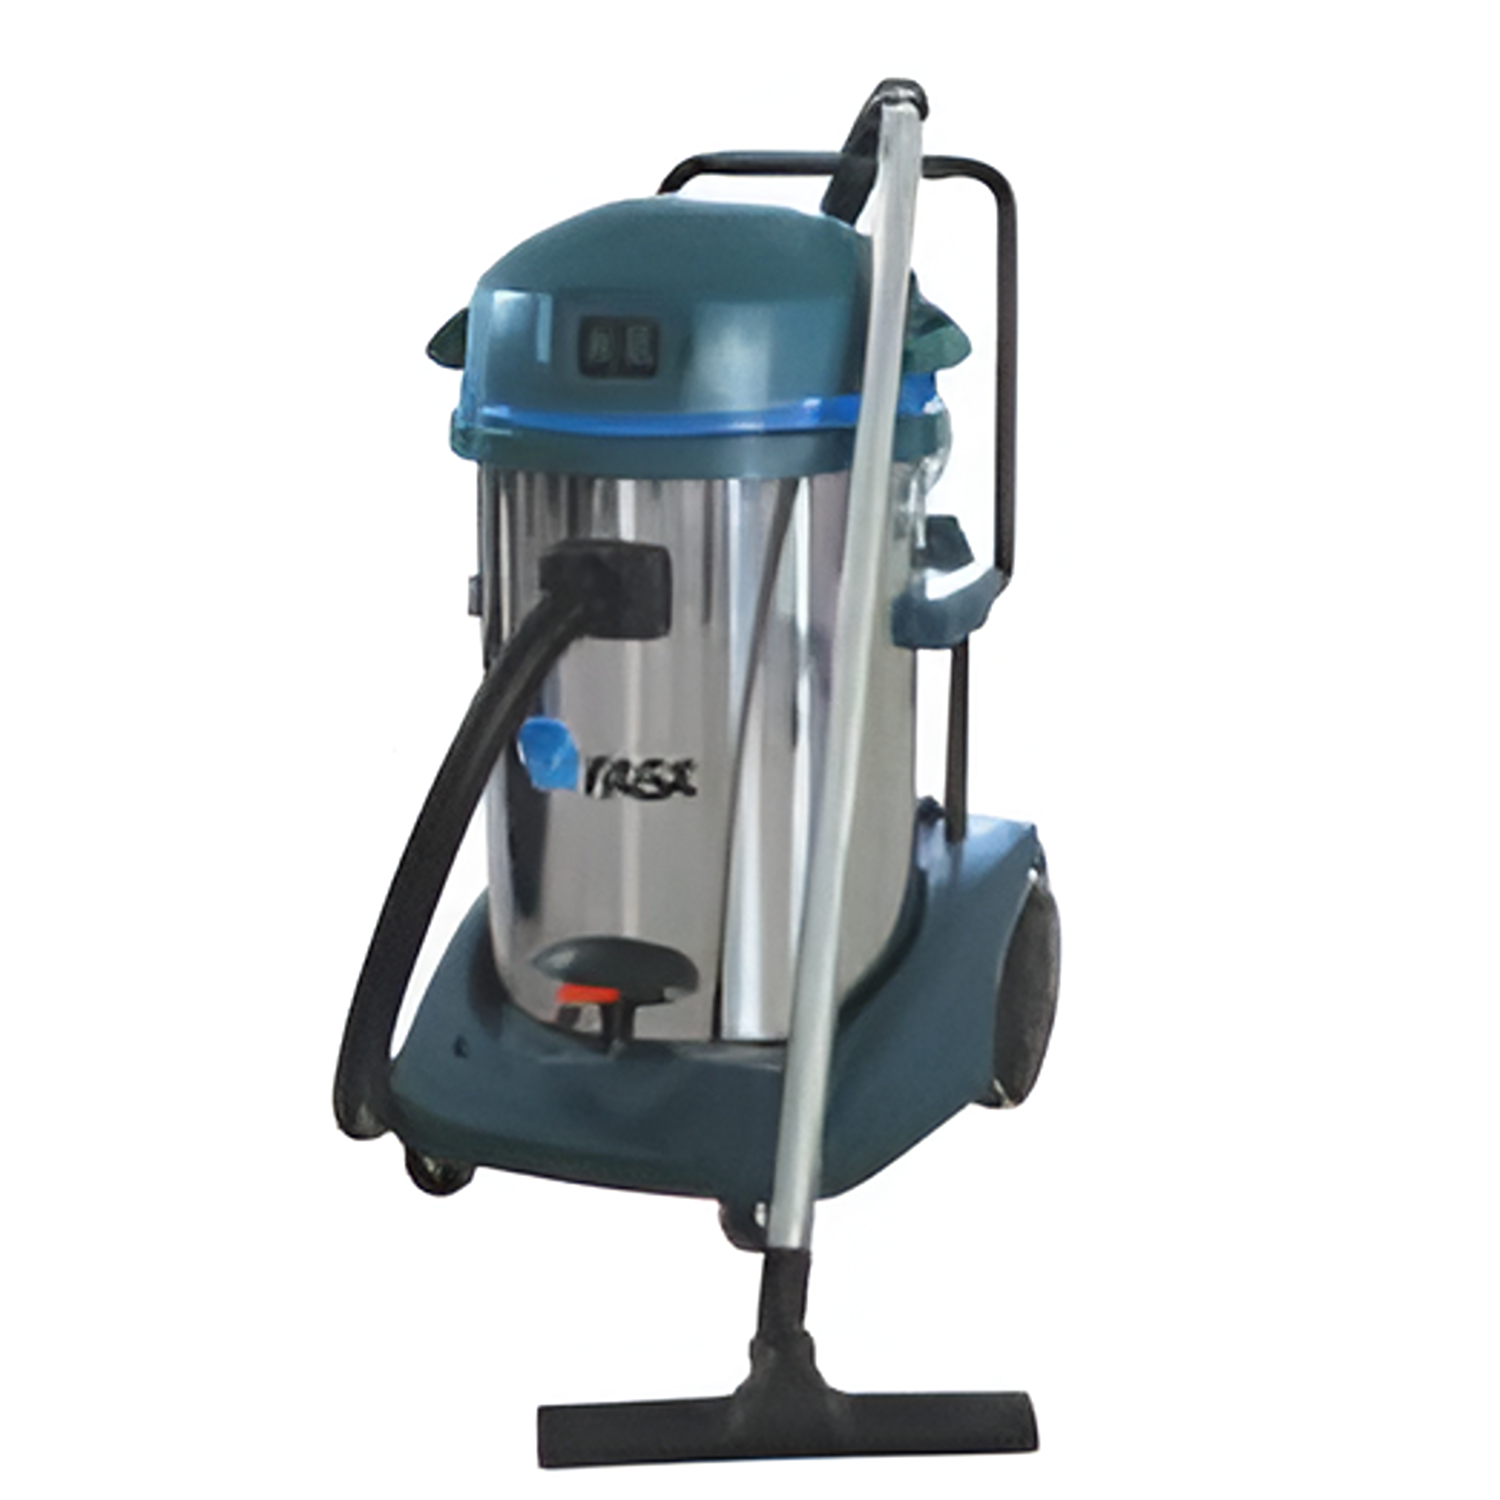 Yew Aik AA00010-DOMINO  Wet & Dry Vacuum Cleaner 2000 W - Premium Vacuum Cleaner from YEW AIK - Shop now at Yew Aik.